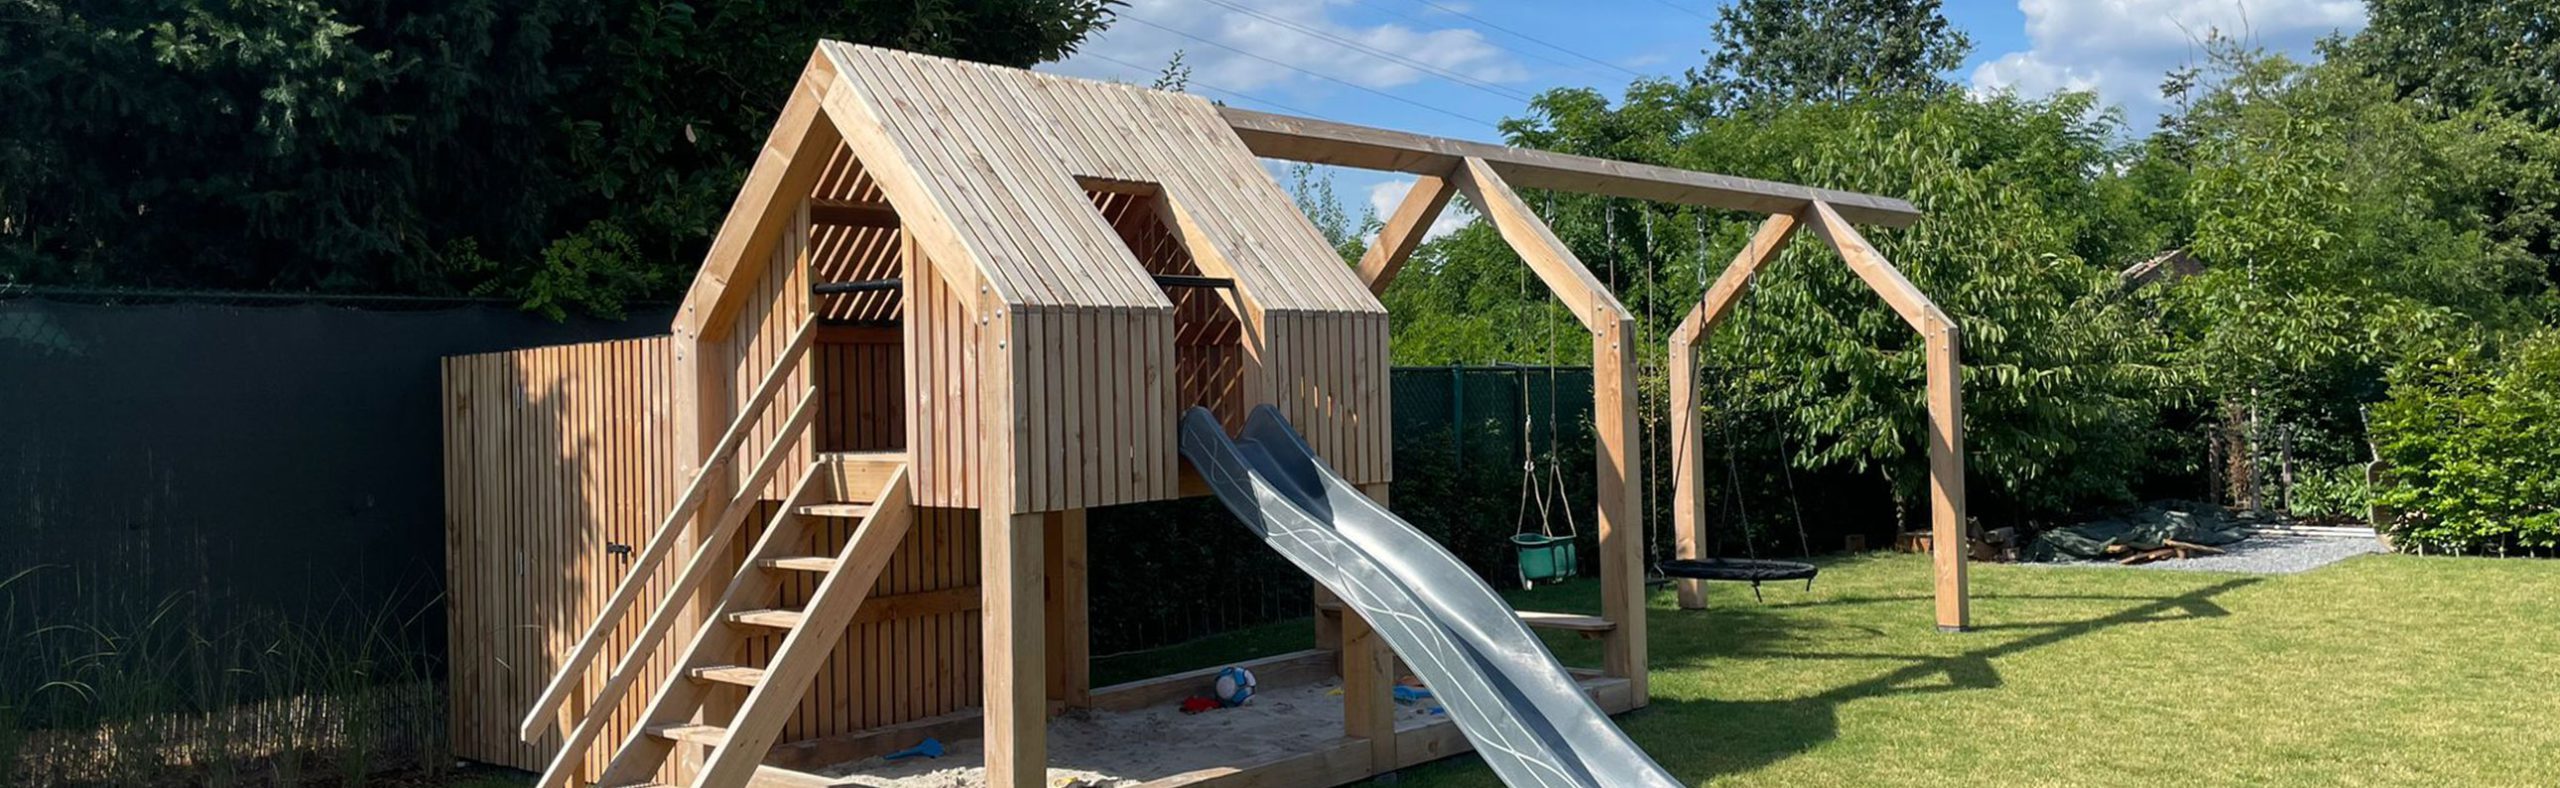 Timmerwerken houten speelhuisje voor kinderen in kessel door Bouwbedrijf Verlaak